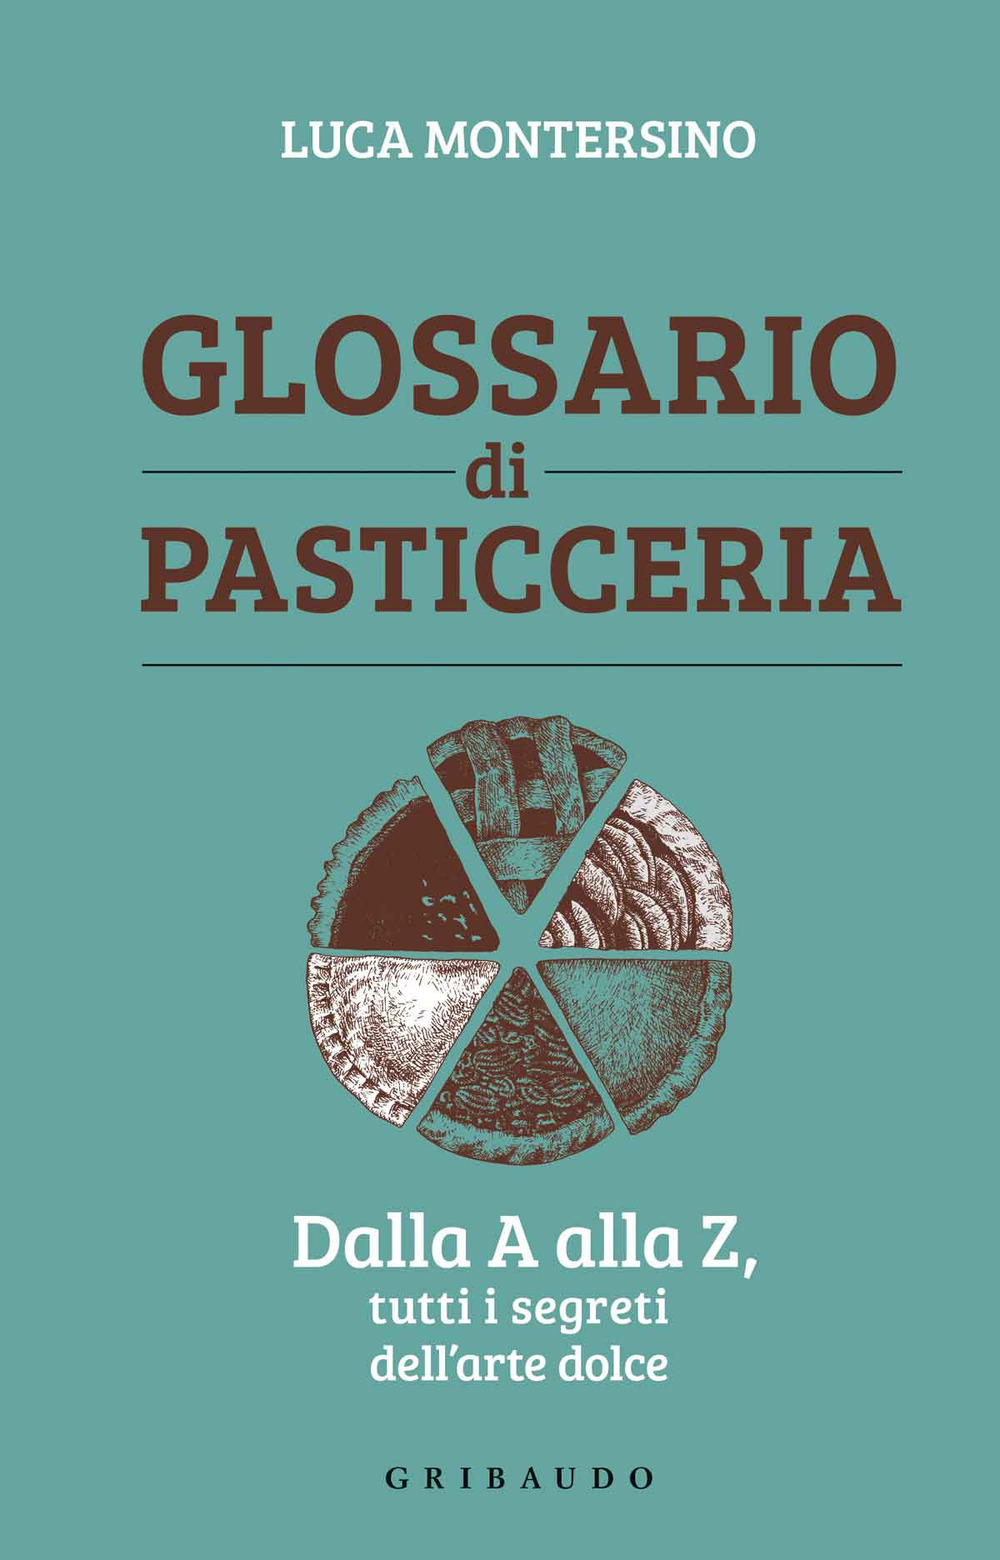 Image of Glossario di pasticceria. Dalla A alla Z, tutti i segreti dell'arte dolce